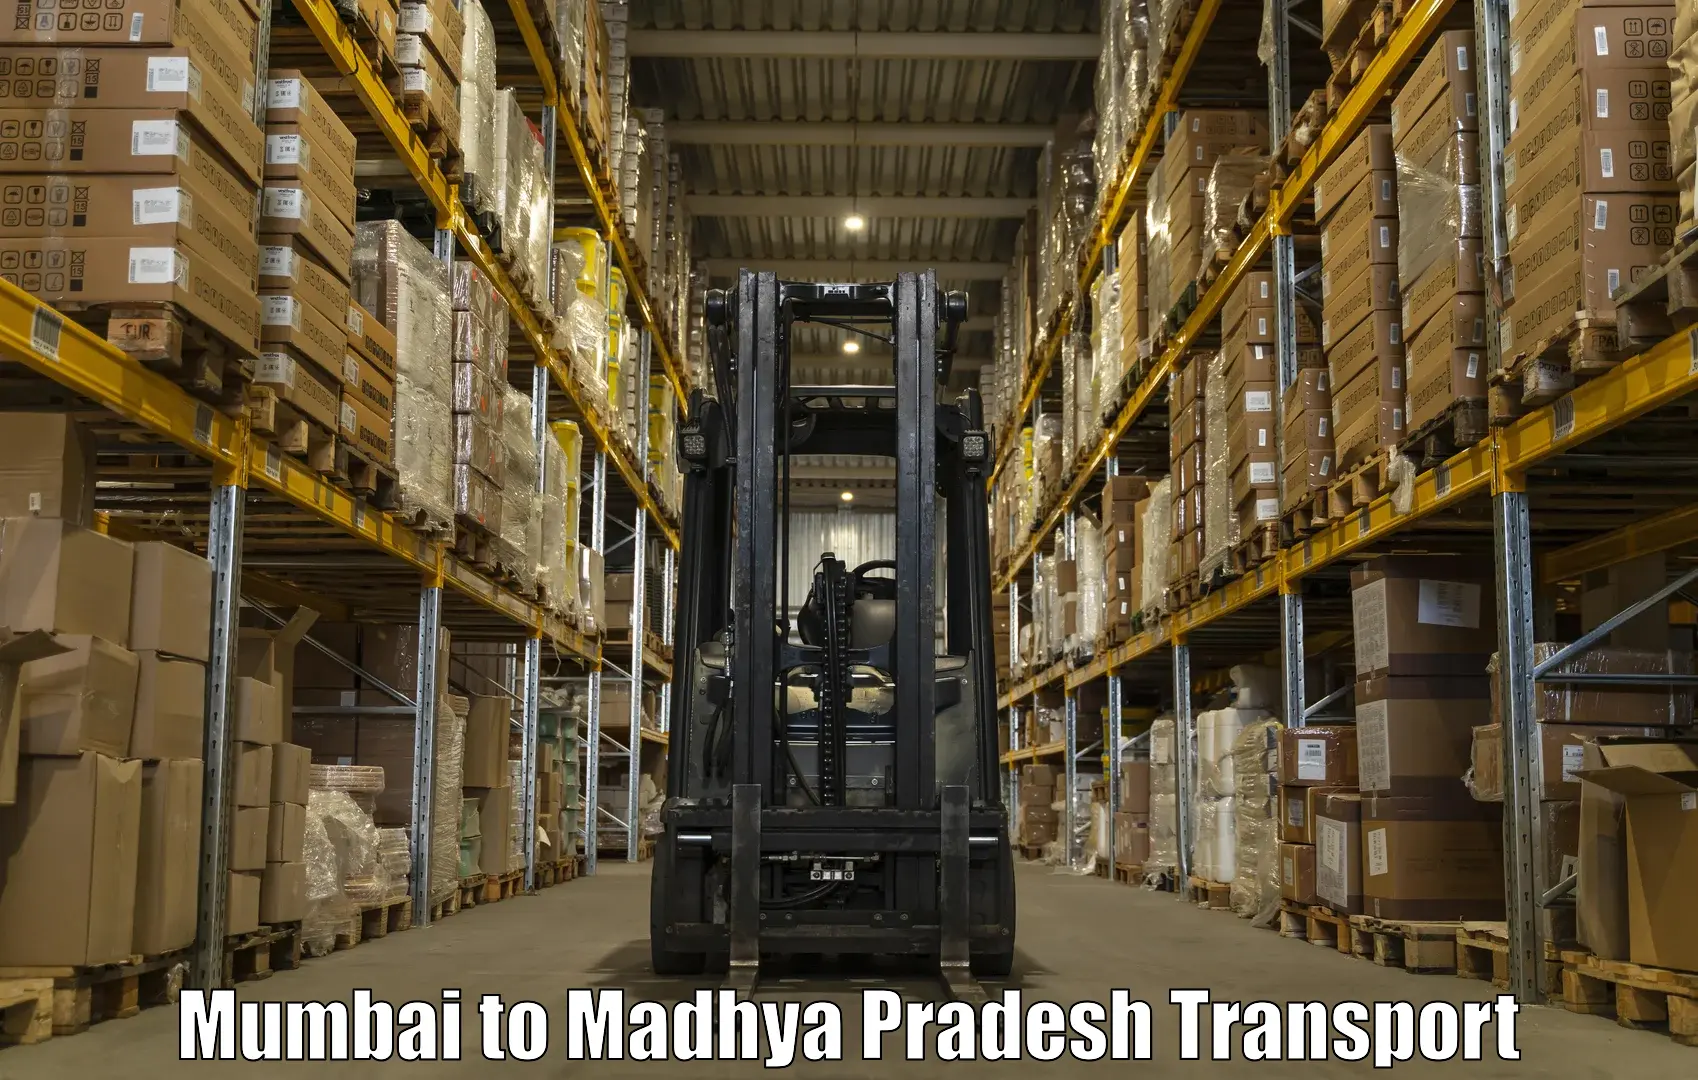 Vehicle transport services Mumbai to Chhindwara